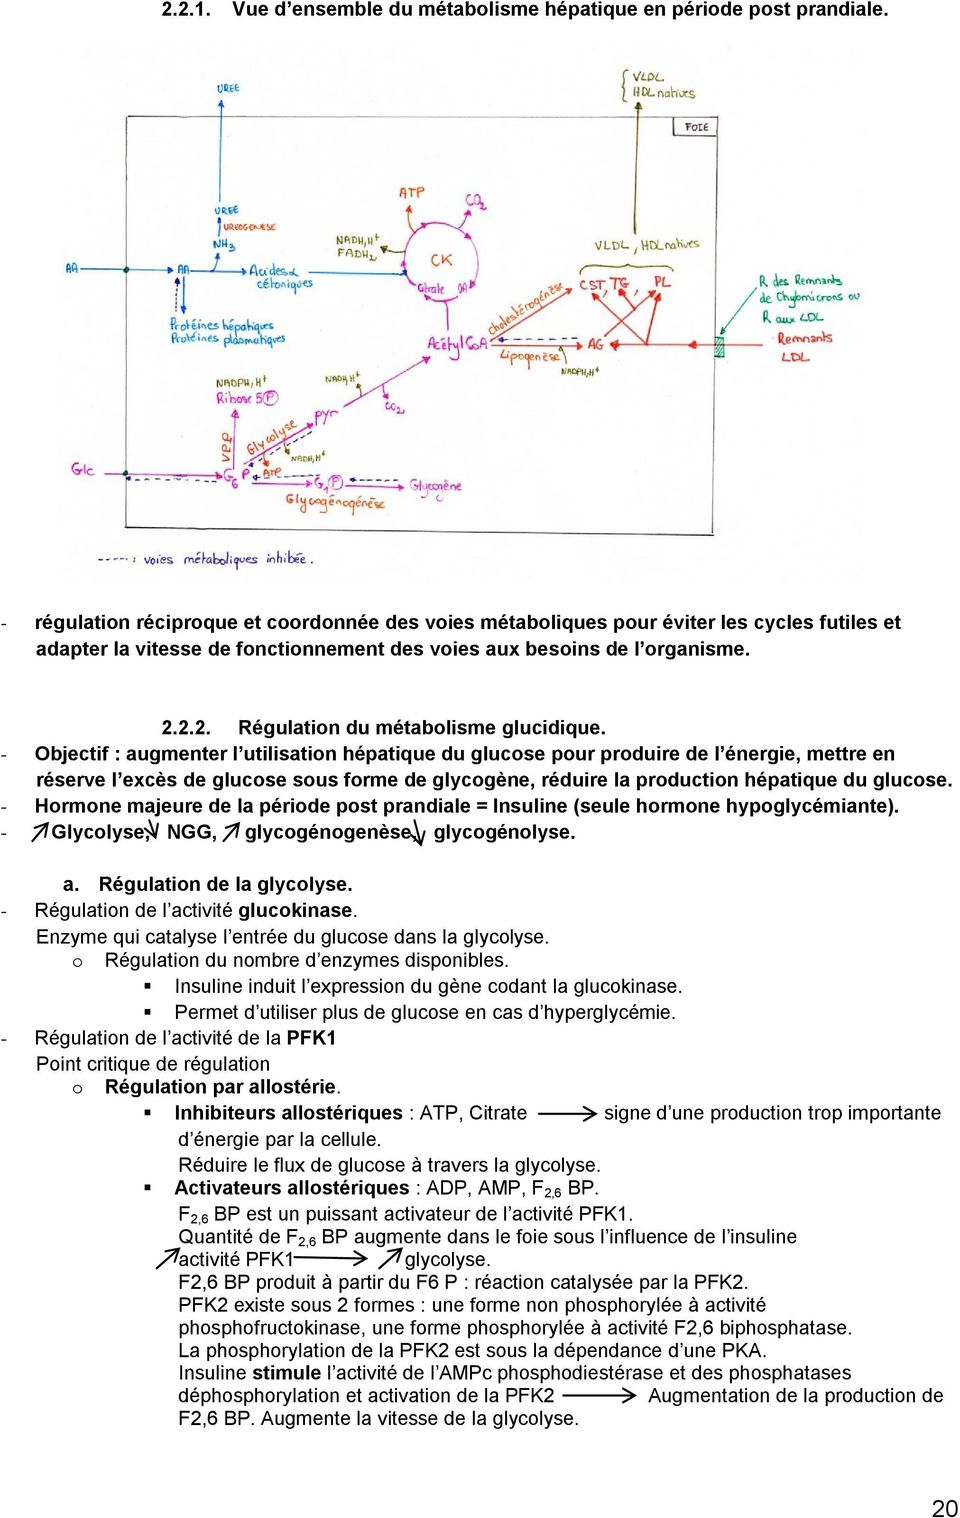 2.2. Régulation du métabolisme glucidique.